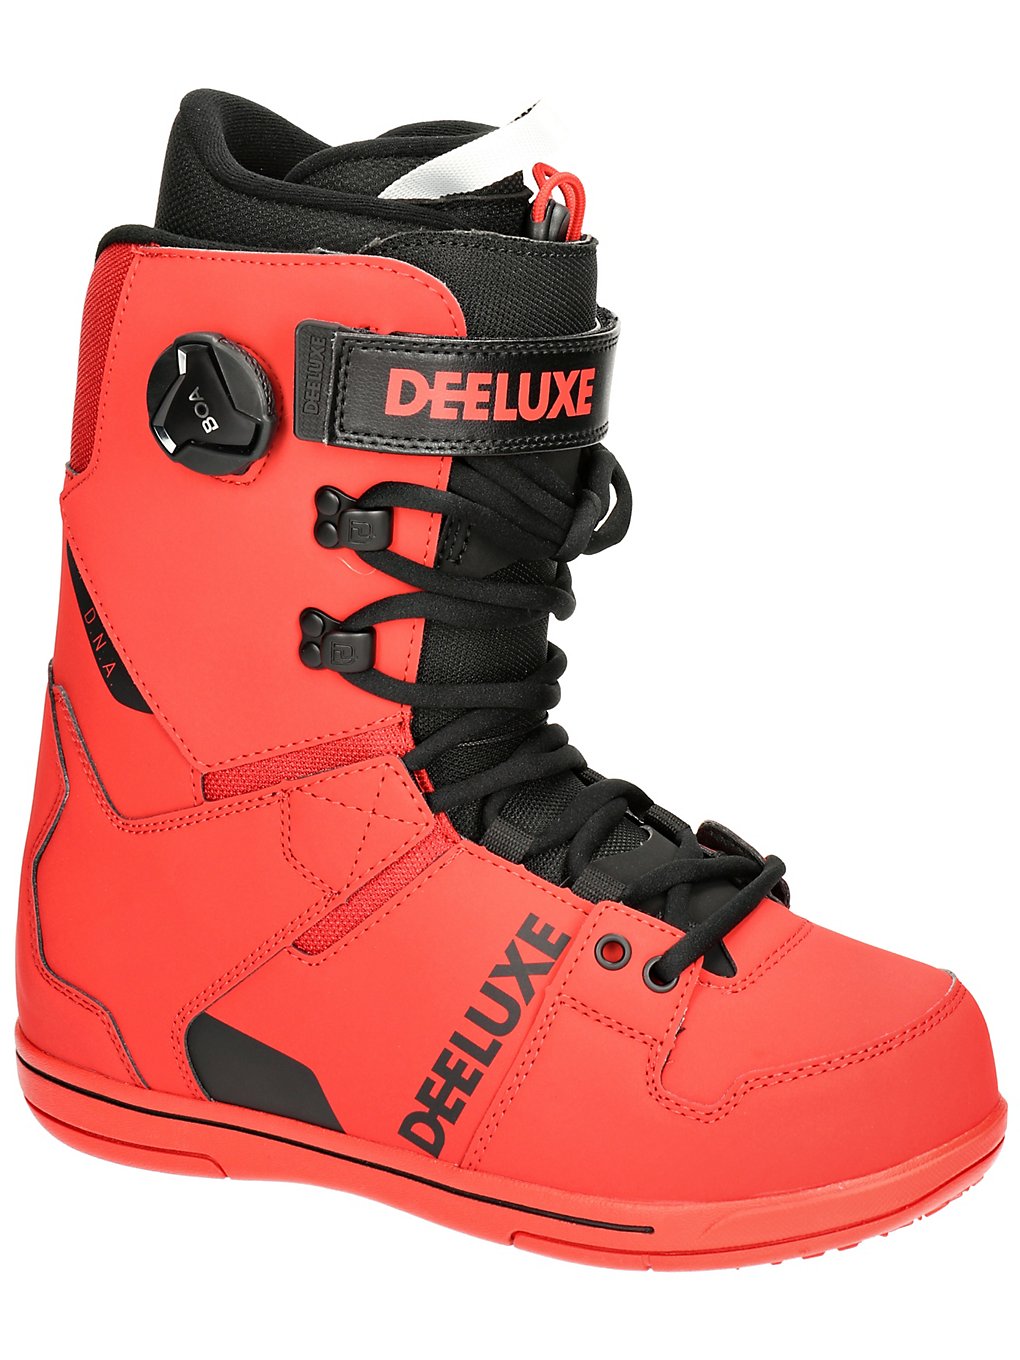 DEELUXE DNA 2022 Snowboard Boots bloodline